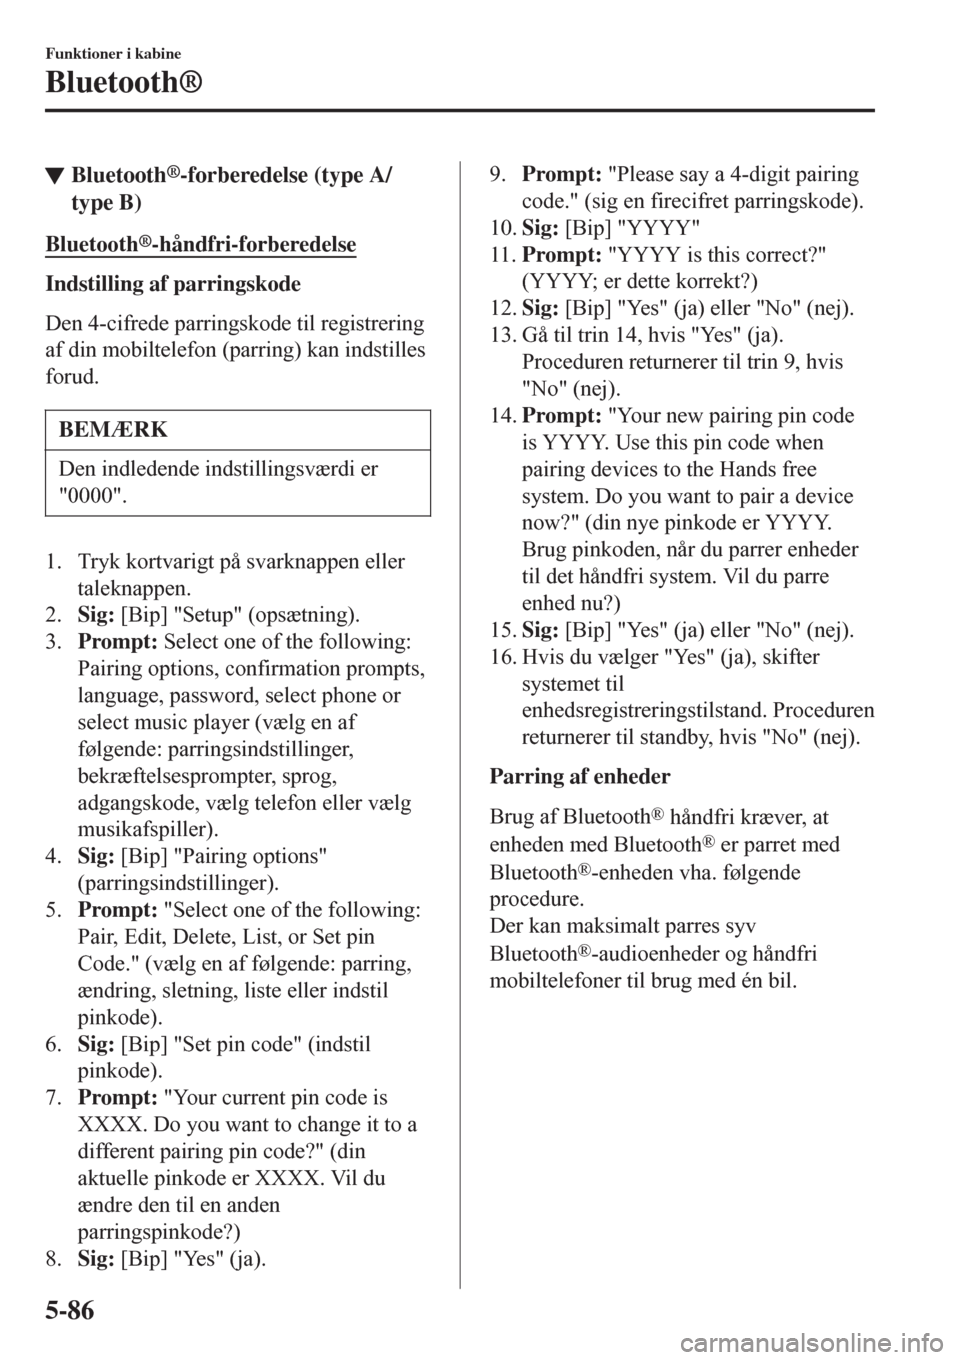 MAZDA MODEL CX-3 2016   Instruktionsbog (in Danish)  tBluetooth®-forberedelse (type A/
type B)
Bluetooth®-håndfri-forberedelse
Indstilling af parringskode
Den 4-cifrede parringskode til registrering
af din mobiltelefon (parring) kan indstilles
forud.